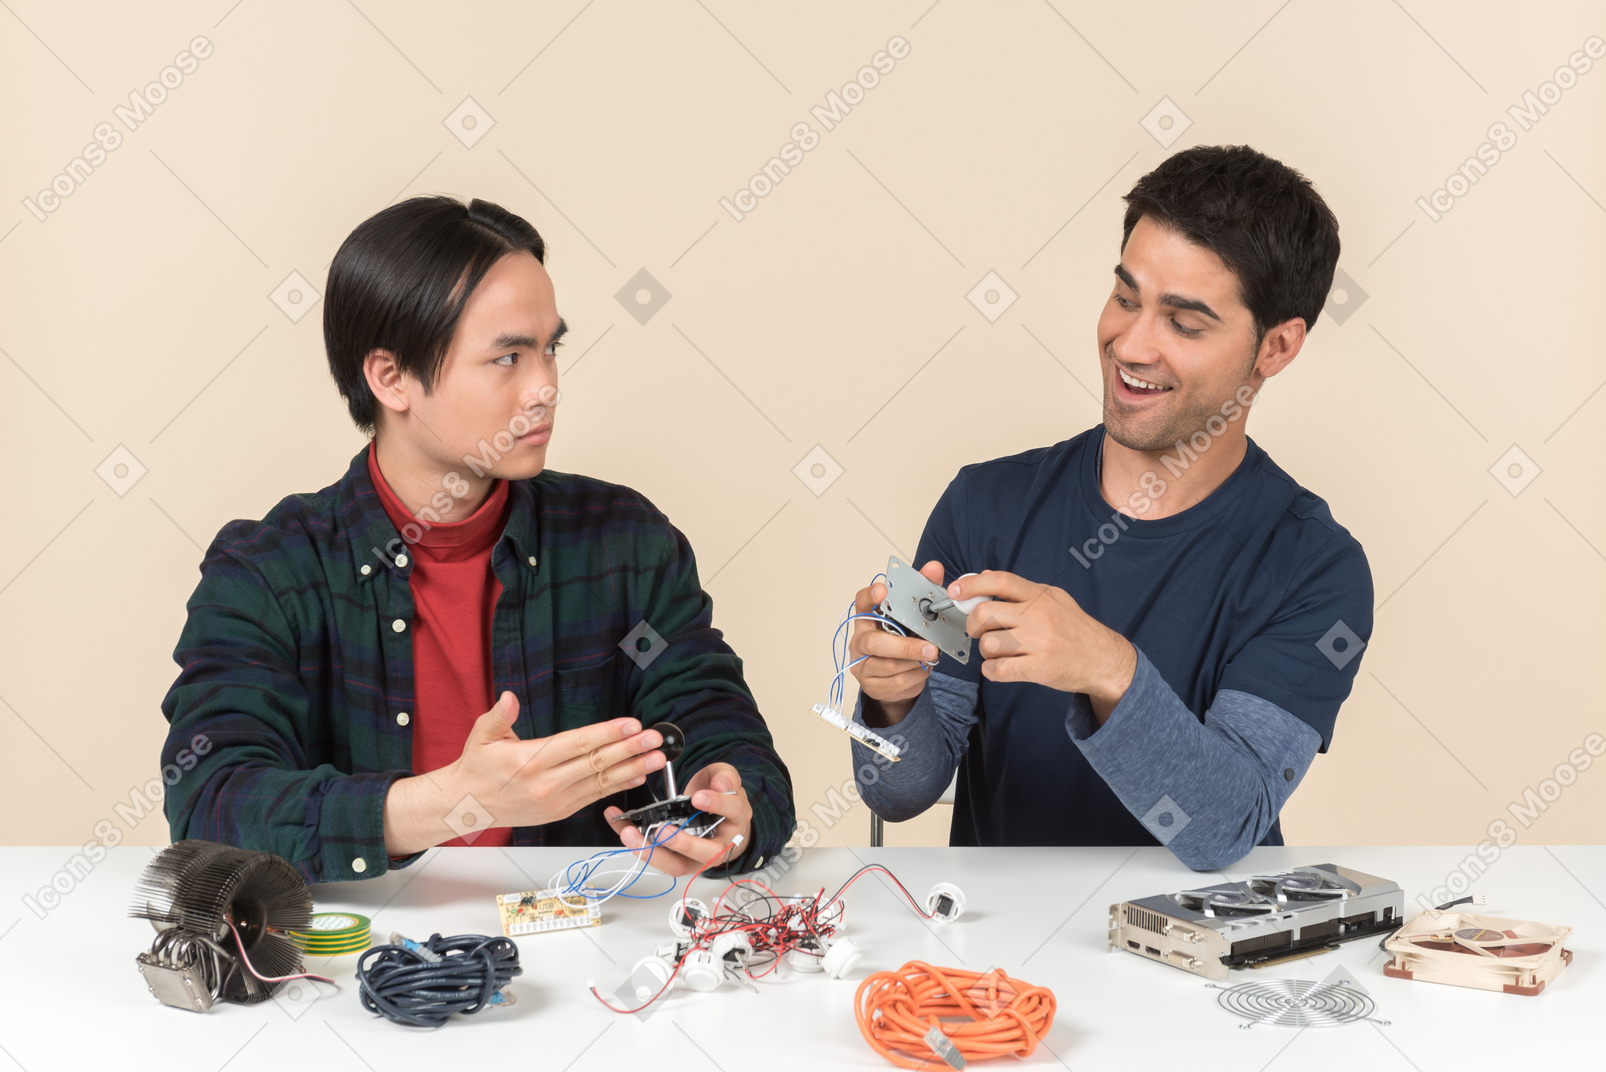 Dos jóvenes geeks sentados a la mesa y arreglando algunos detalles